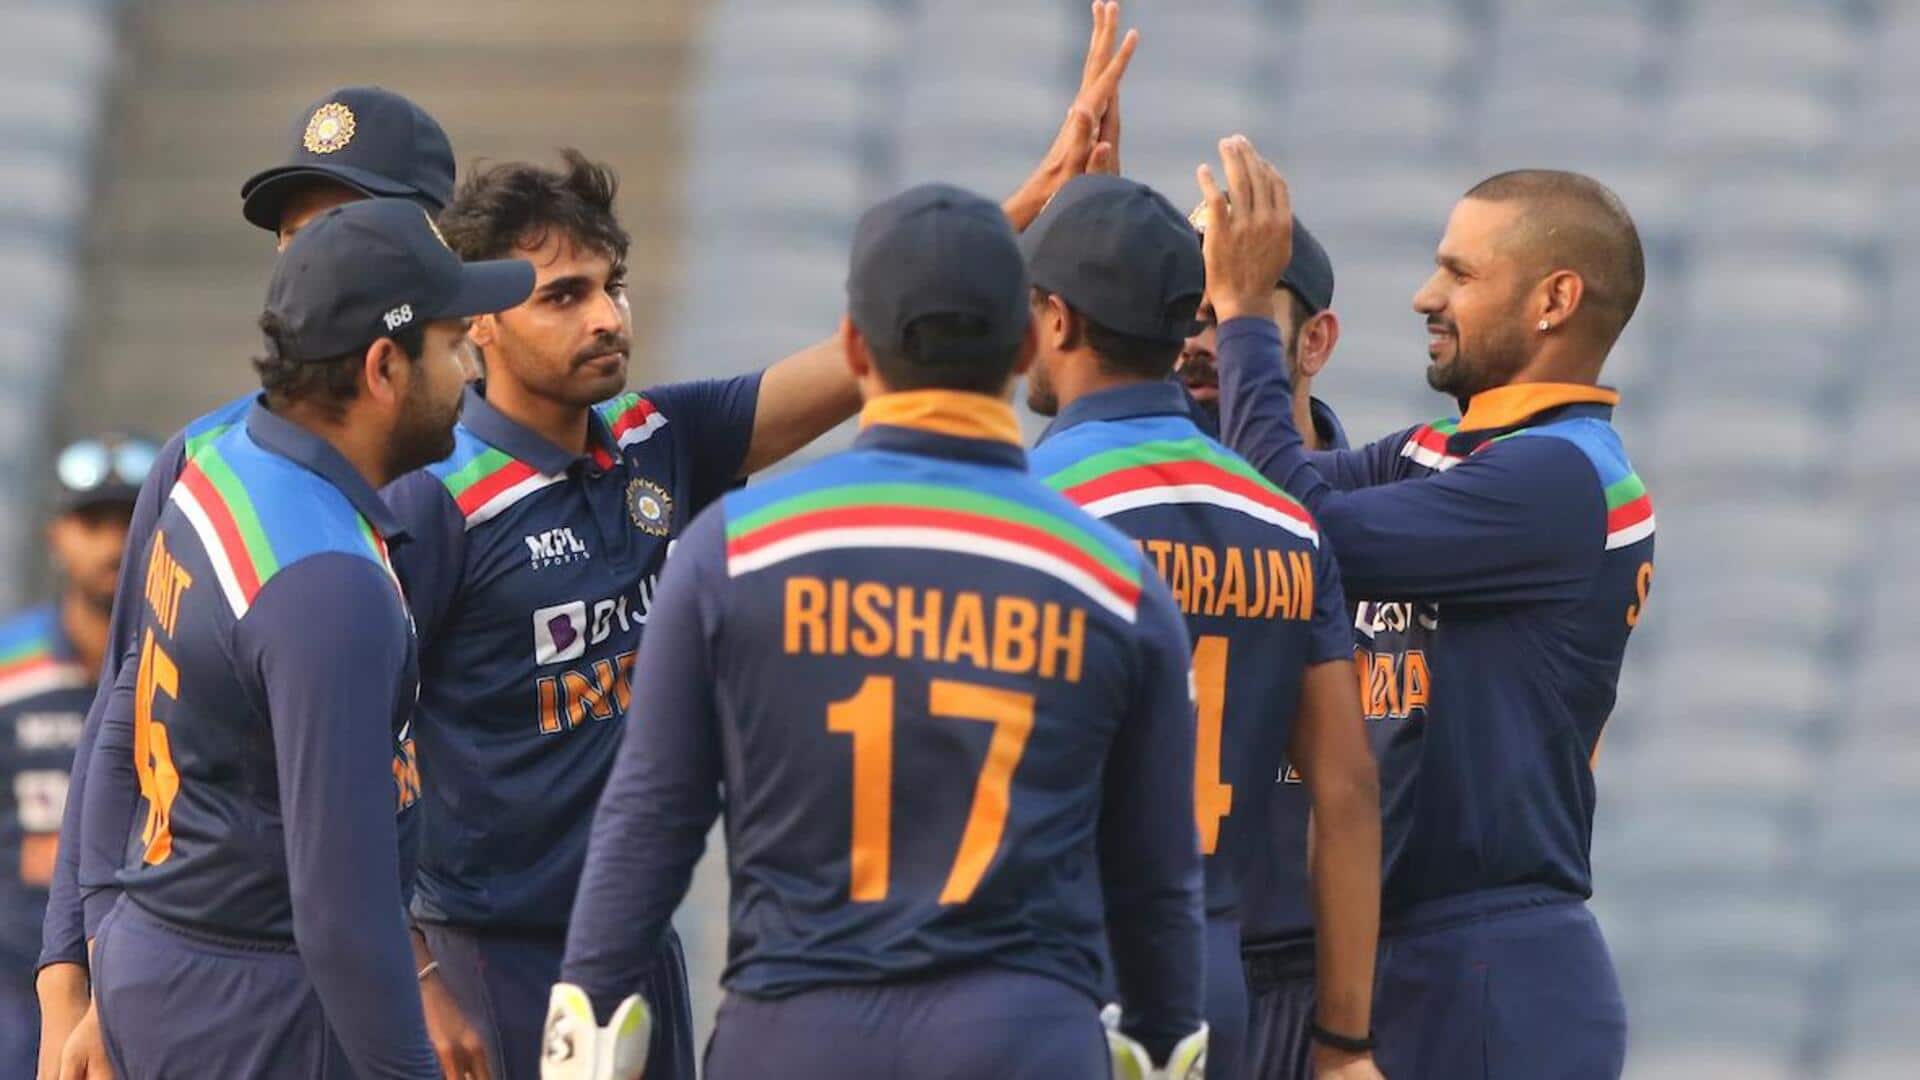 वेस्टइंडीज की सरजमीं पर कैसा रहा है भारतीय टी-20 टीम का प्रदर्शन? जानिए आंकड़े 